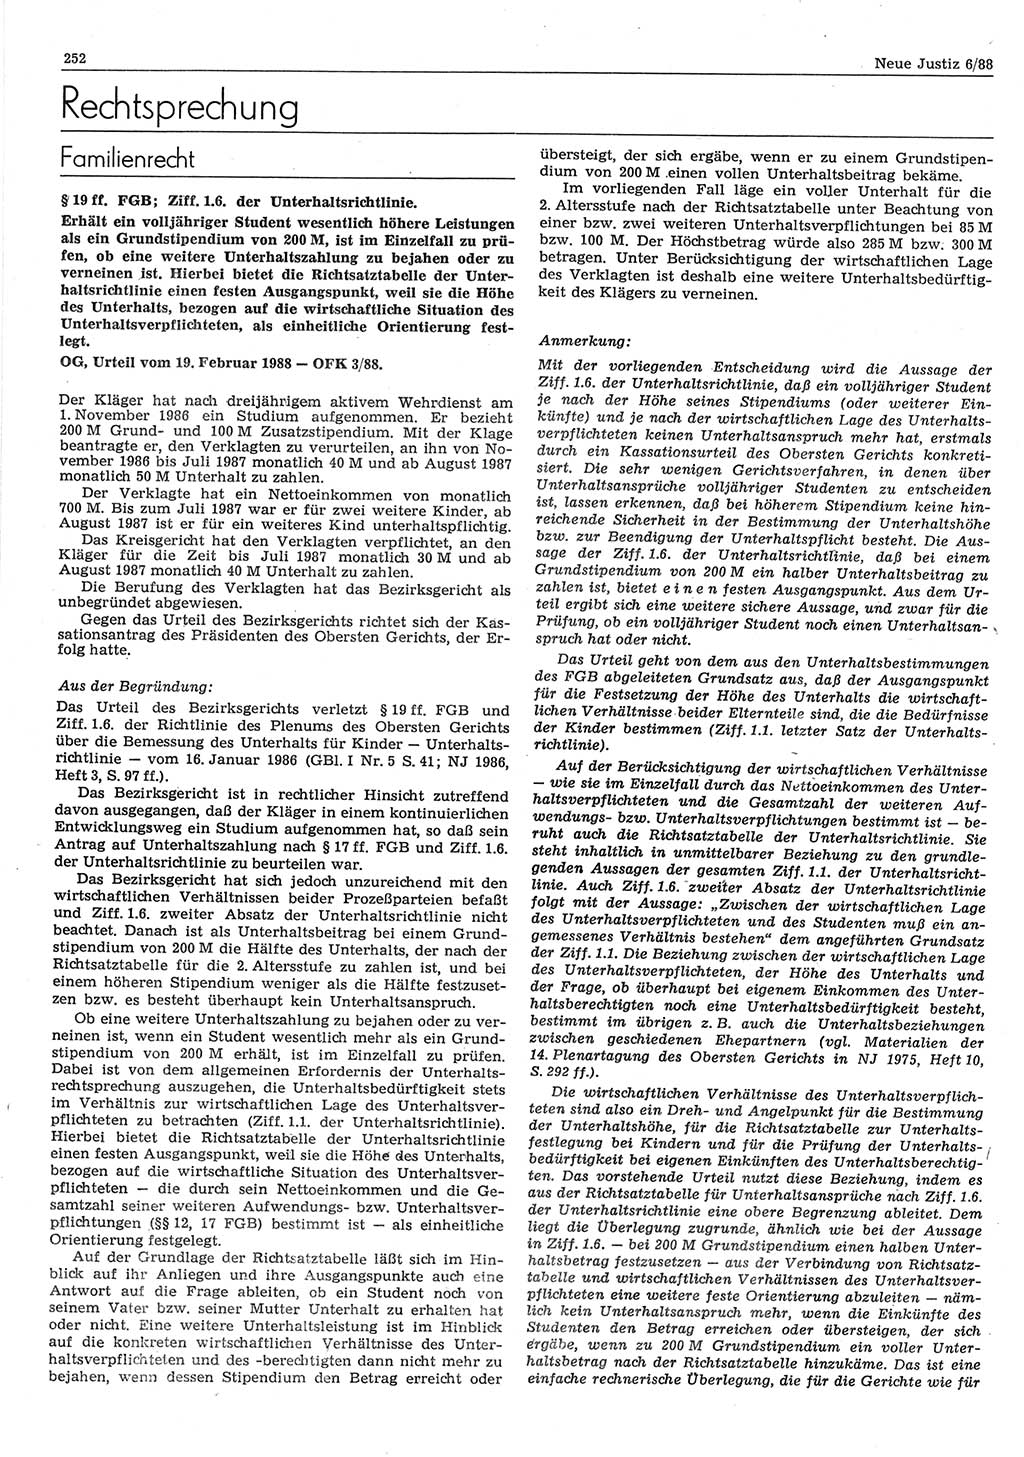 Neue Justiz (NJ), Zeitschrift für sozialistisches Recht und Gesetzlichkeit [Deutsche Demokratische Republik (DDR)], 42. Jahrgang 1988, Seite 252 (NJ DDR 1988, S. 252)